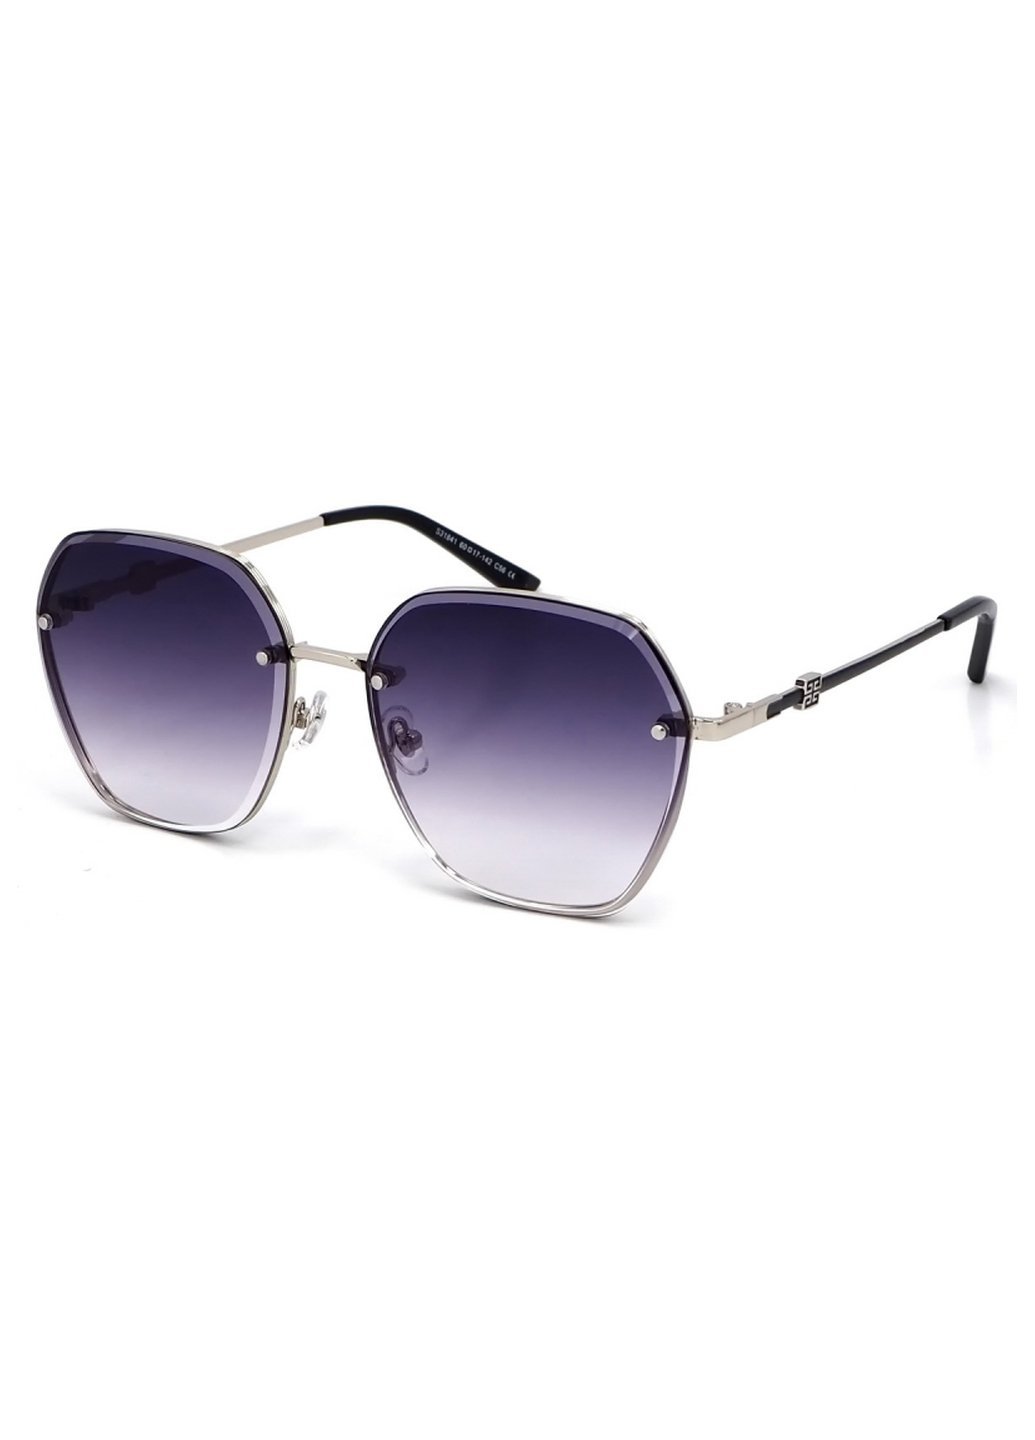 Купить Женские солнцезащитные очки Merlini с поляризацией S31841 117116 - Серый в интернет-магазине